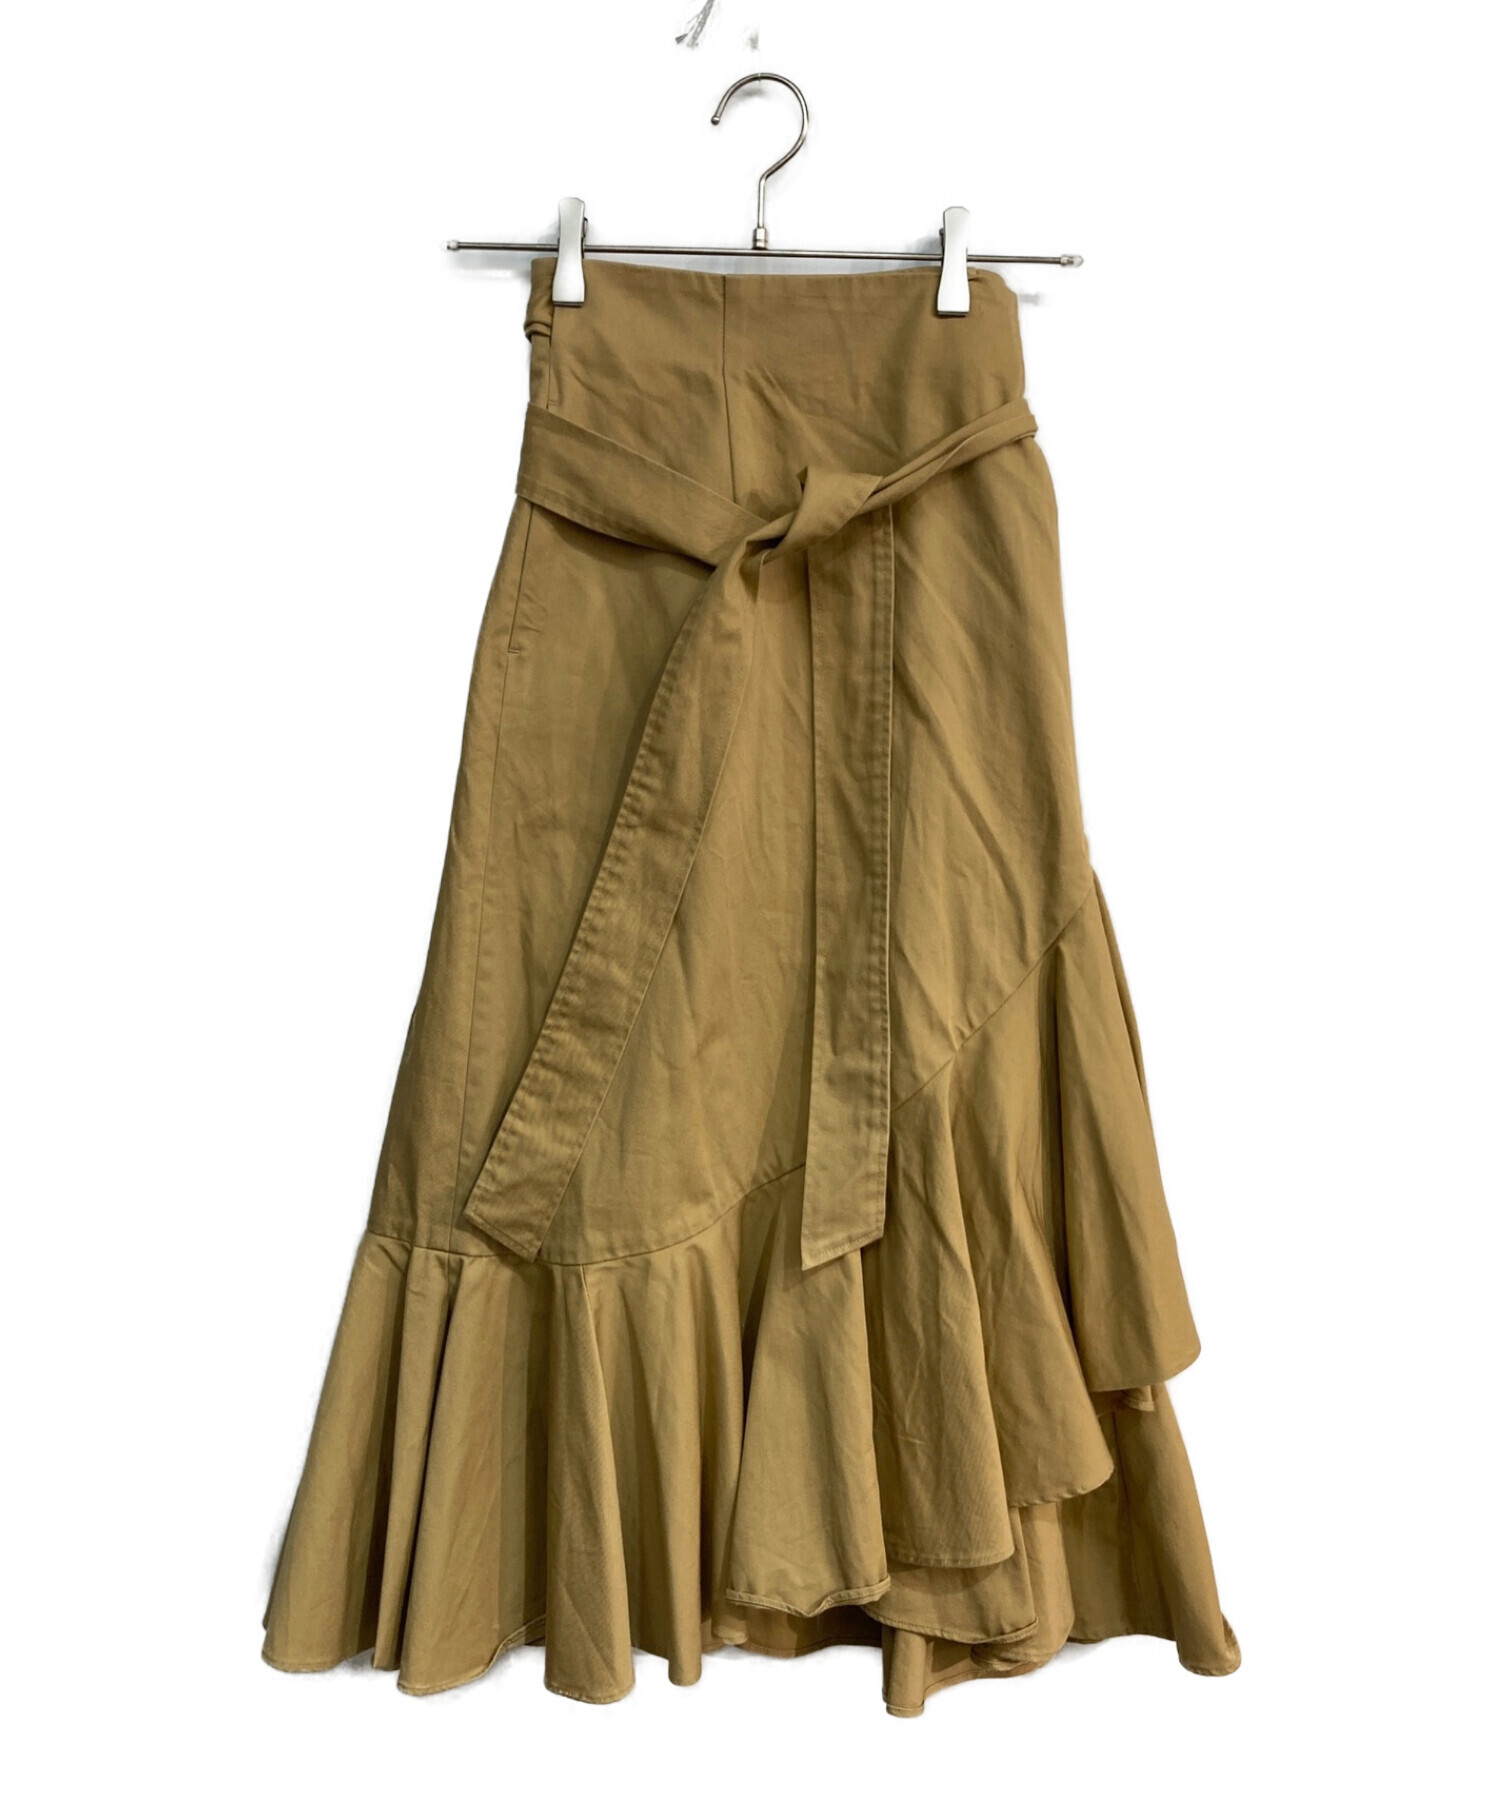 STRASBURGO ロングスカート サイズ38 - スカート